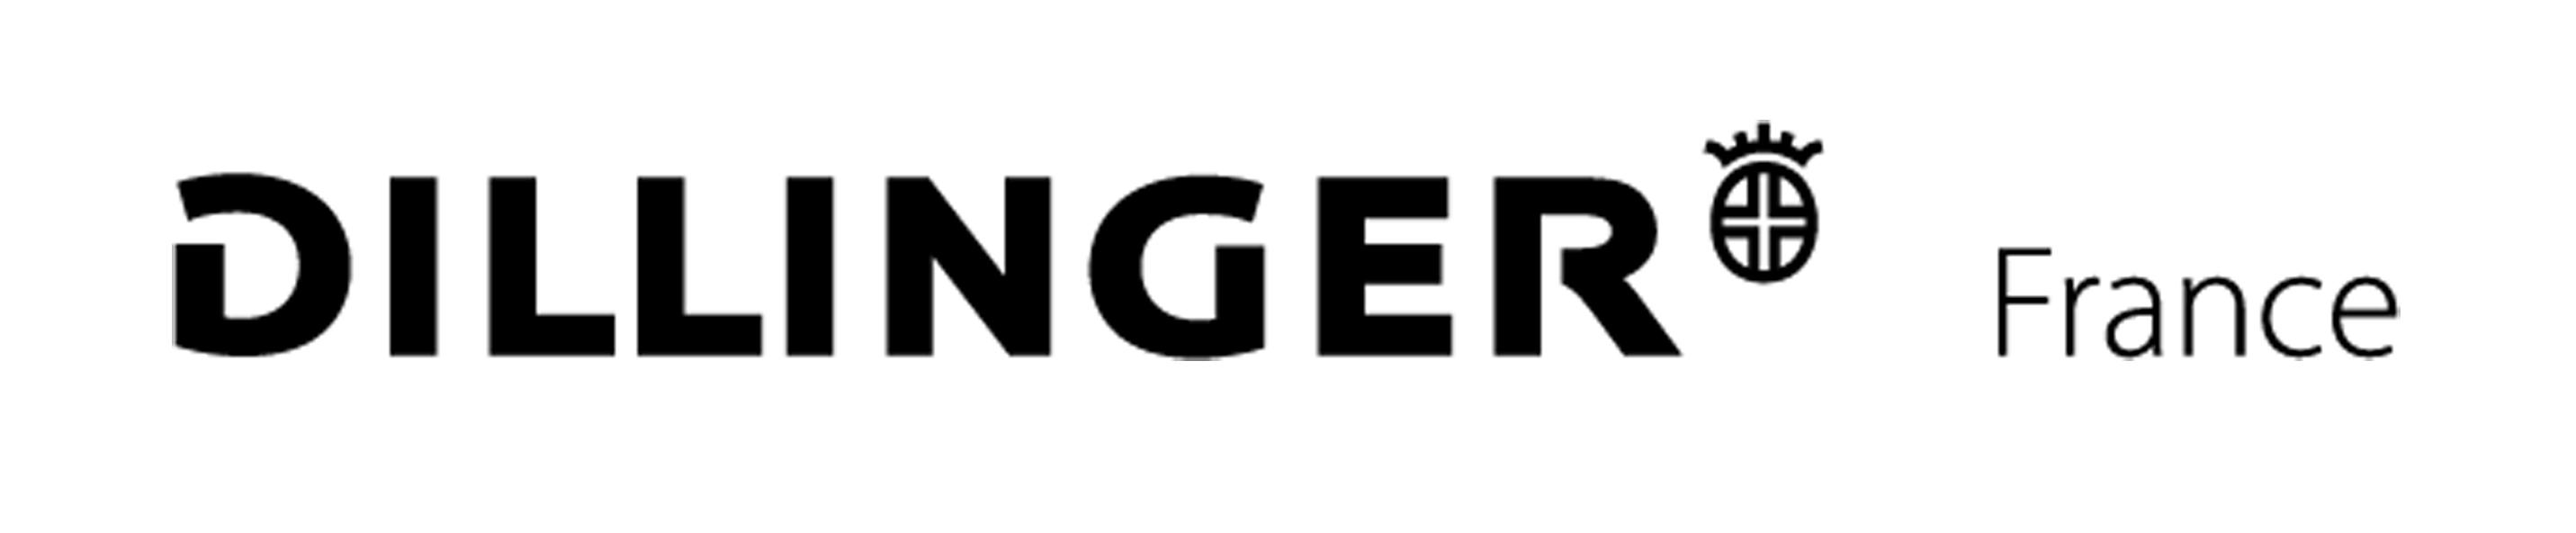 logo Dillinger France